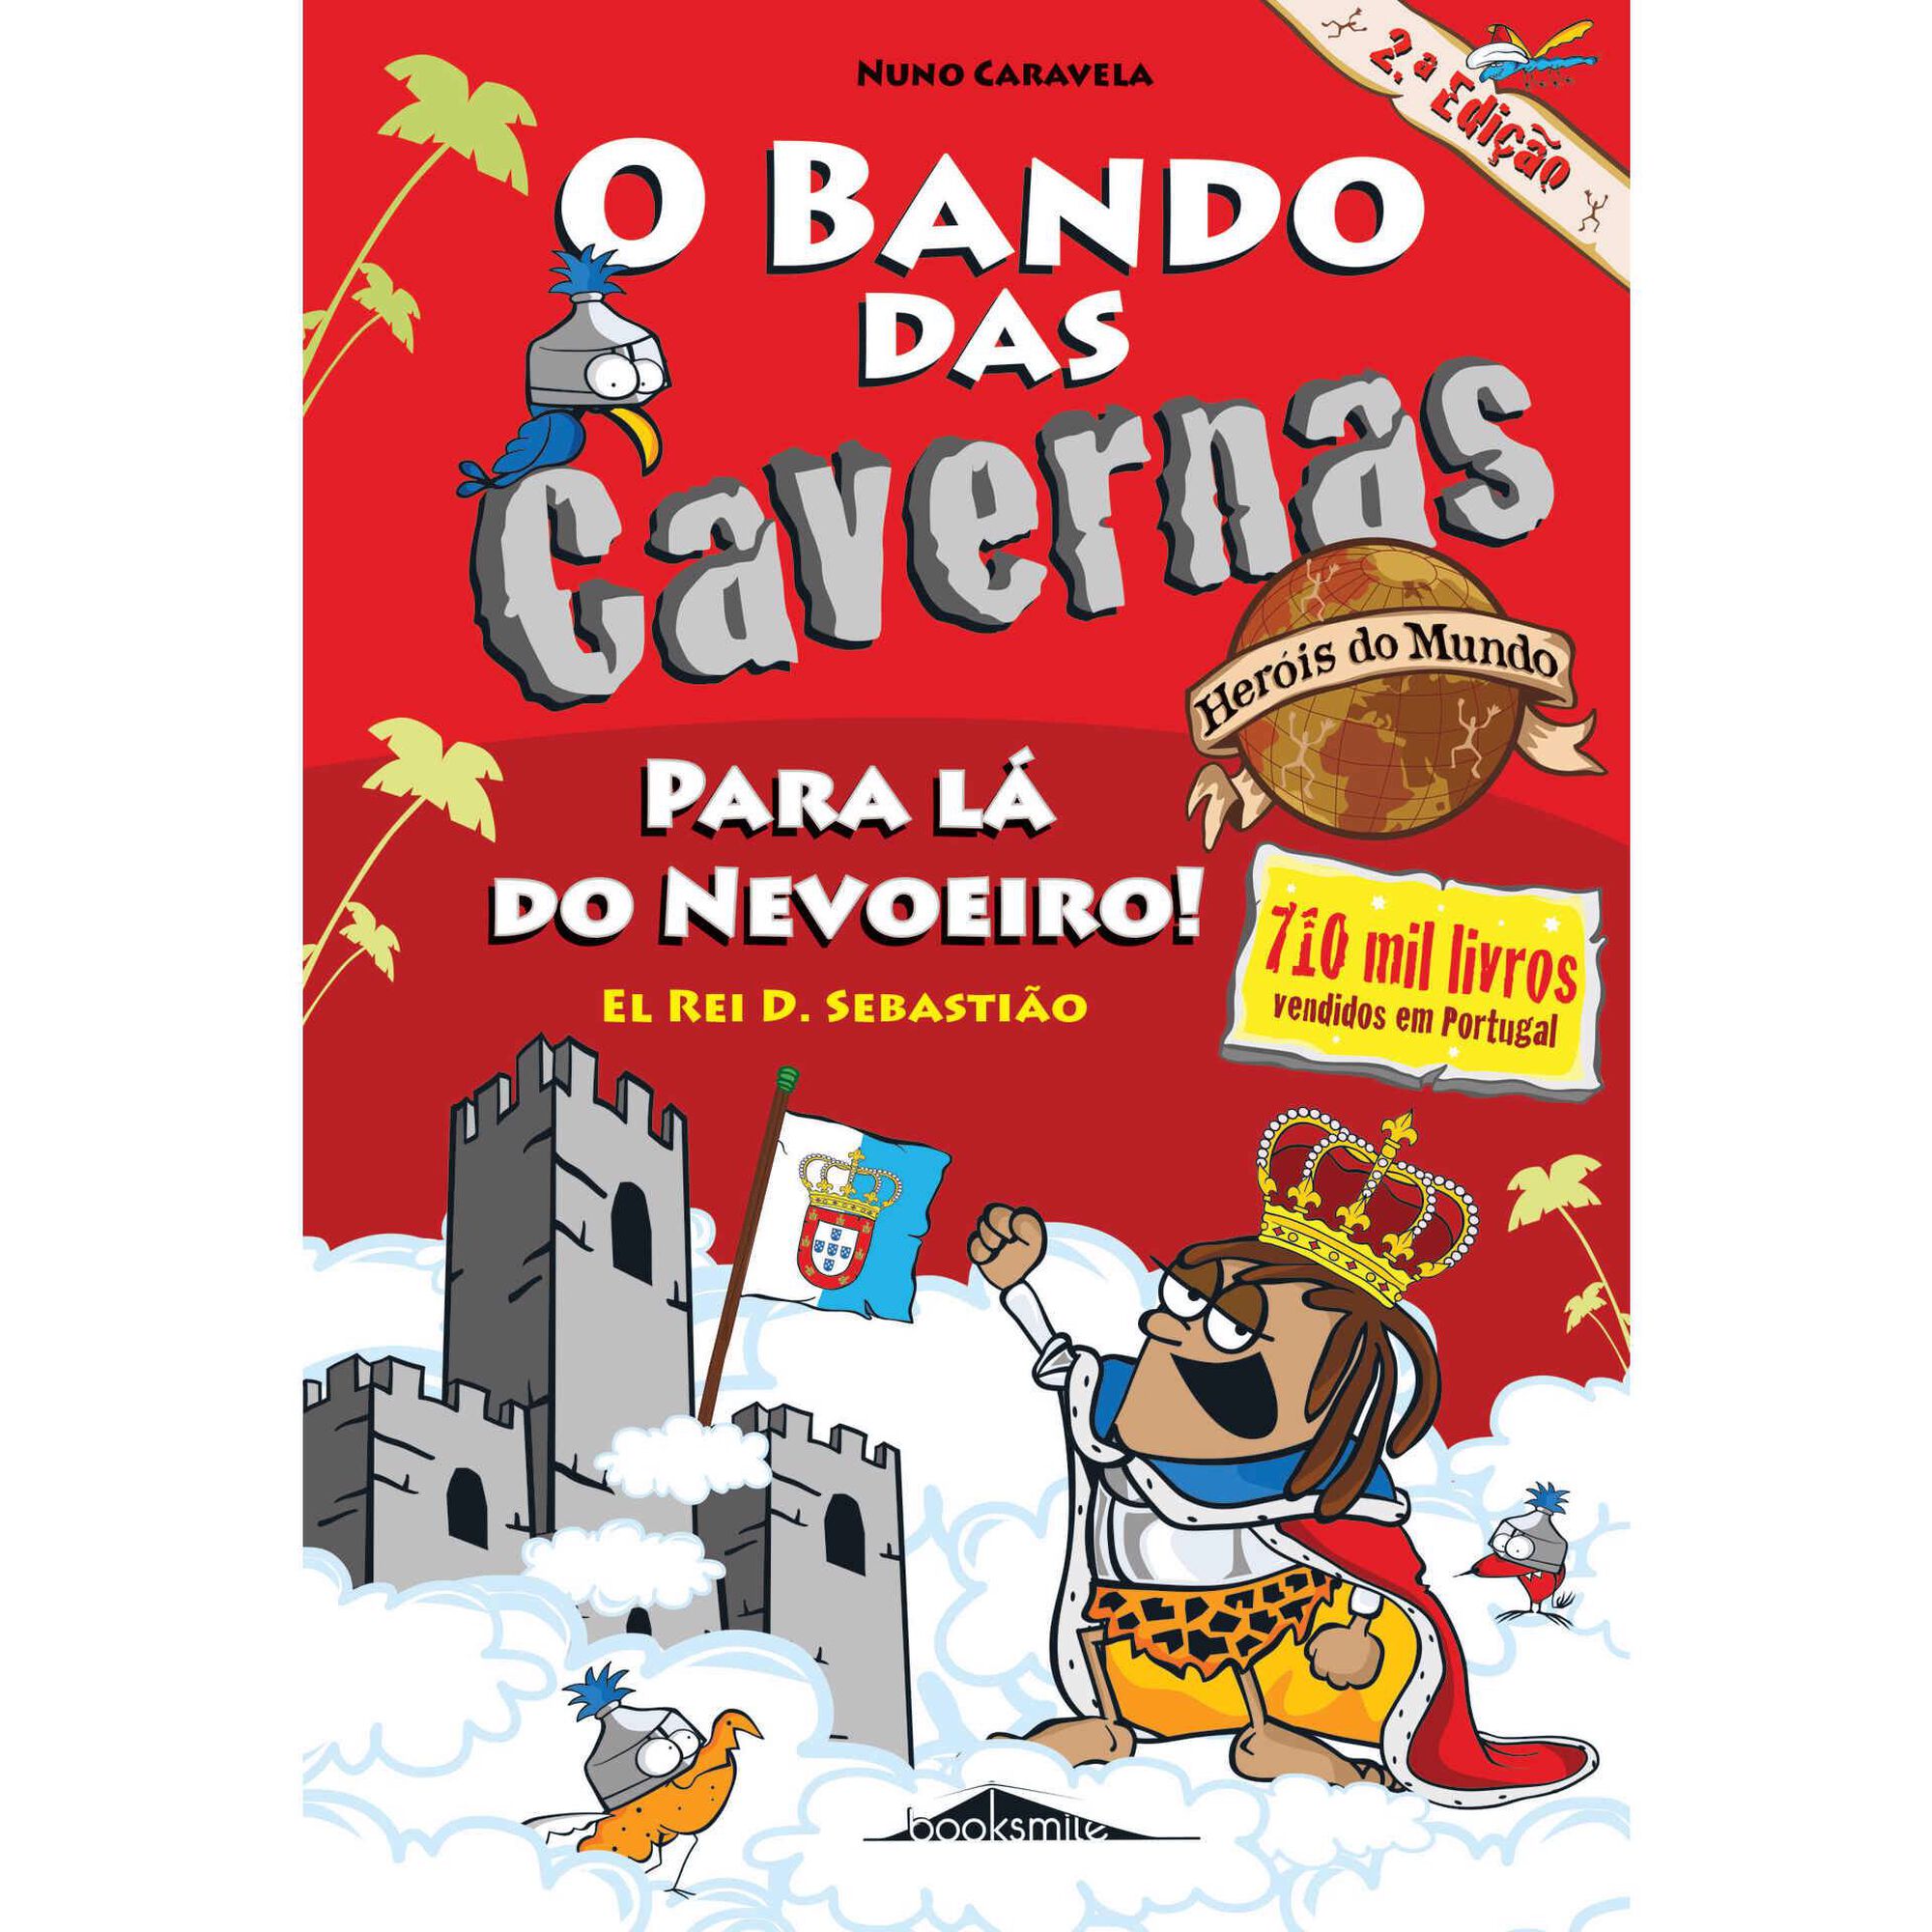 O Bando das Cavernas Heróis do Mundo Nº 2 - Para Lá do Nevoeiro! El Rei D. Sebastião